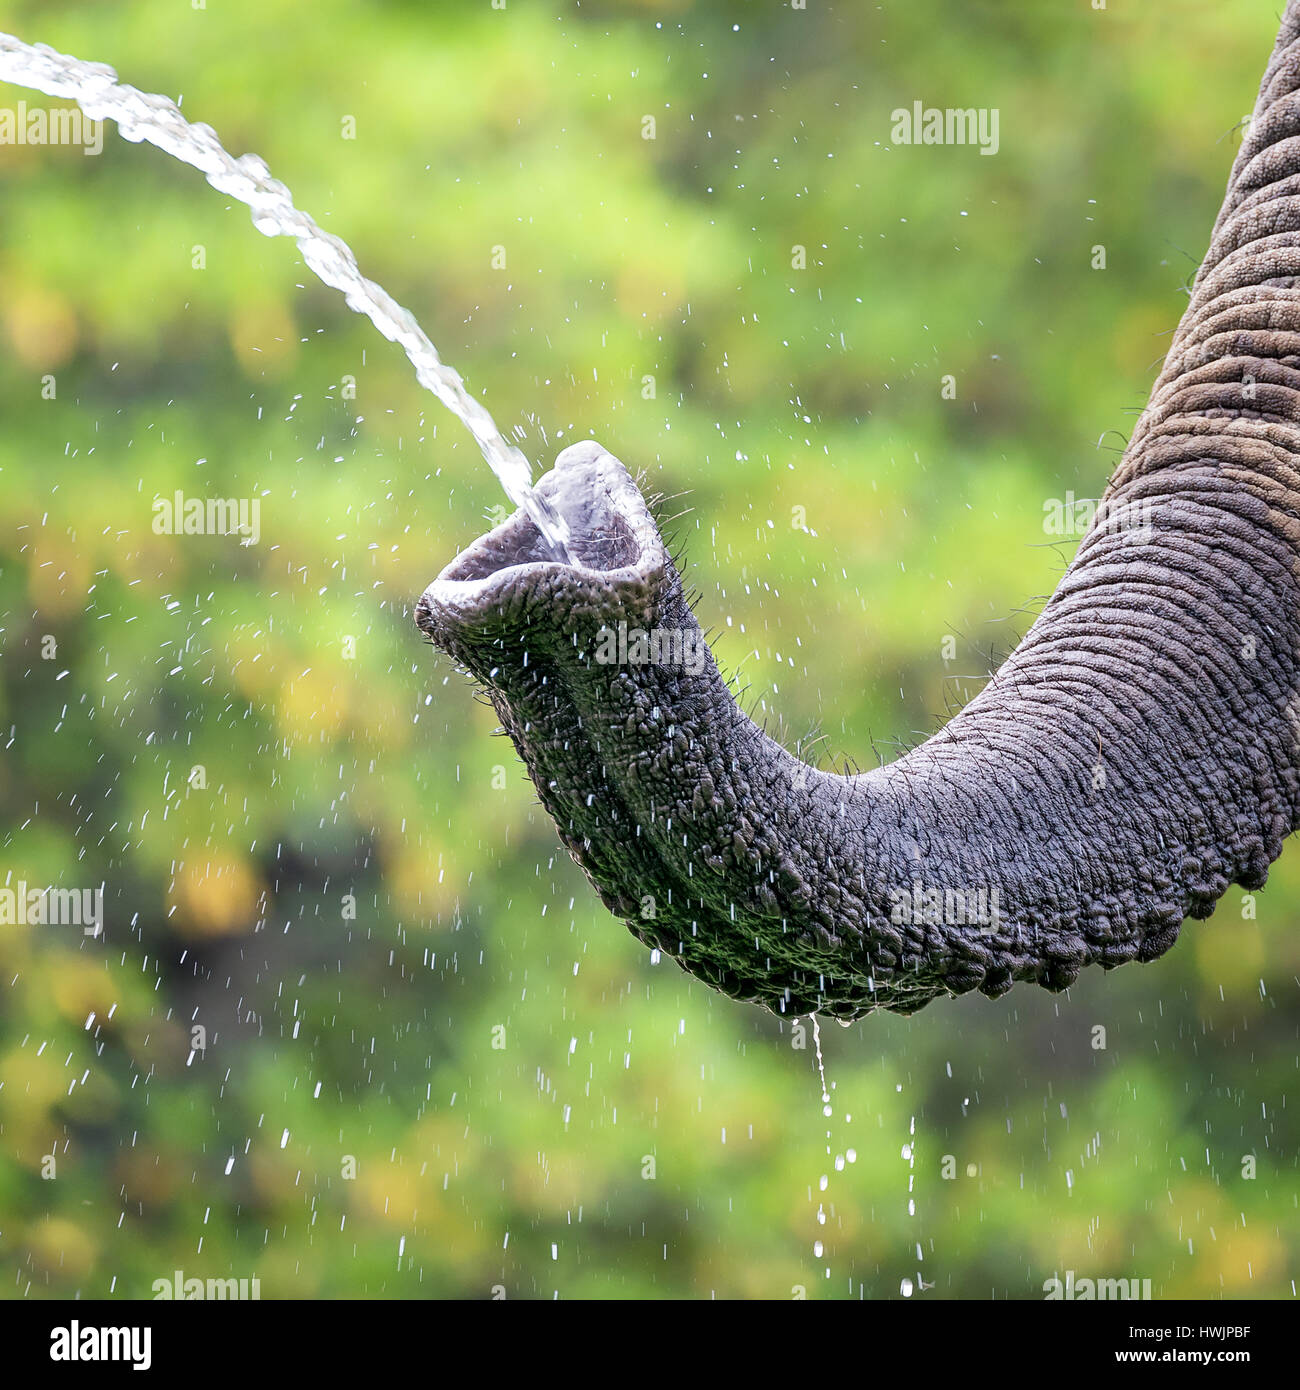 Dettaglio di un elefante africano prendendo un drink dell'acqua. Lussureggiante fogliame verde sfondo bokeh di fondo. Foto Stock